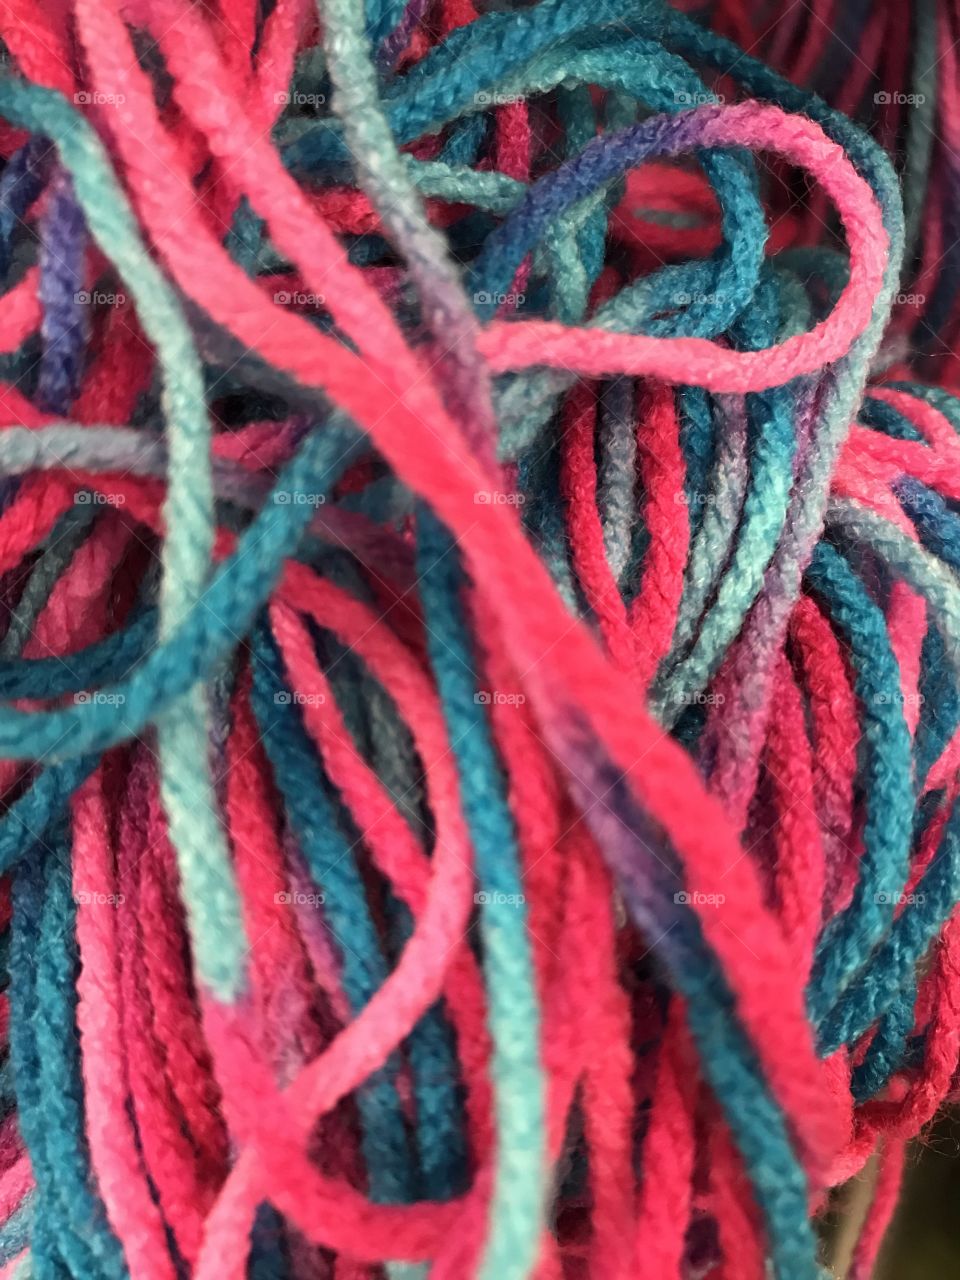 Colorful Yarn, undone 